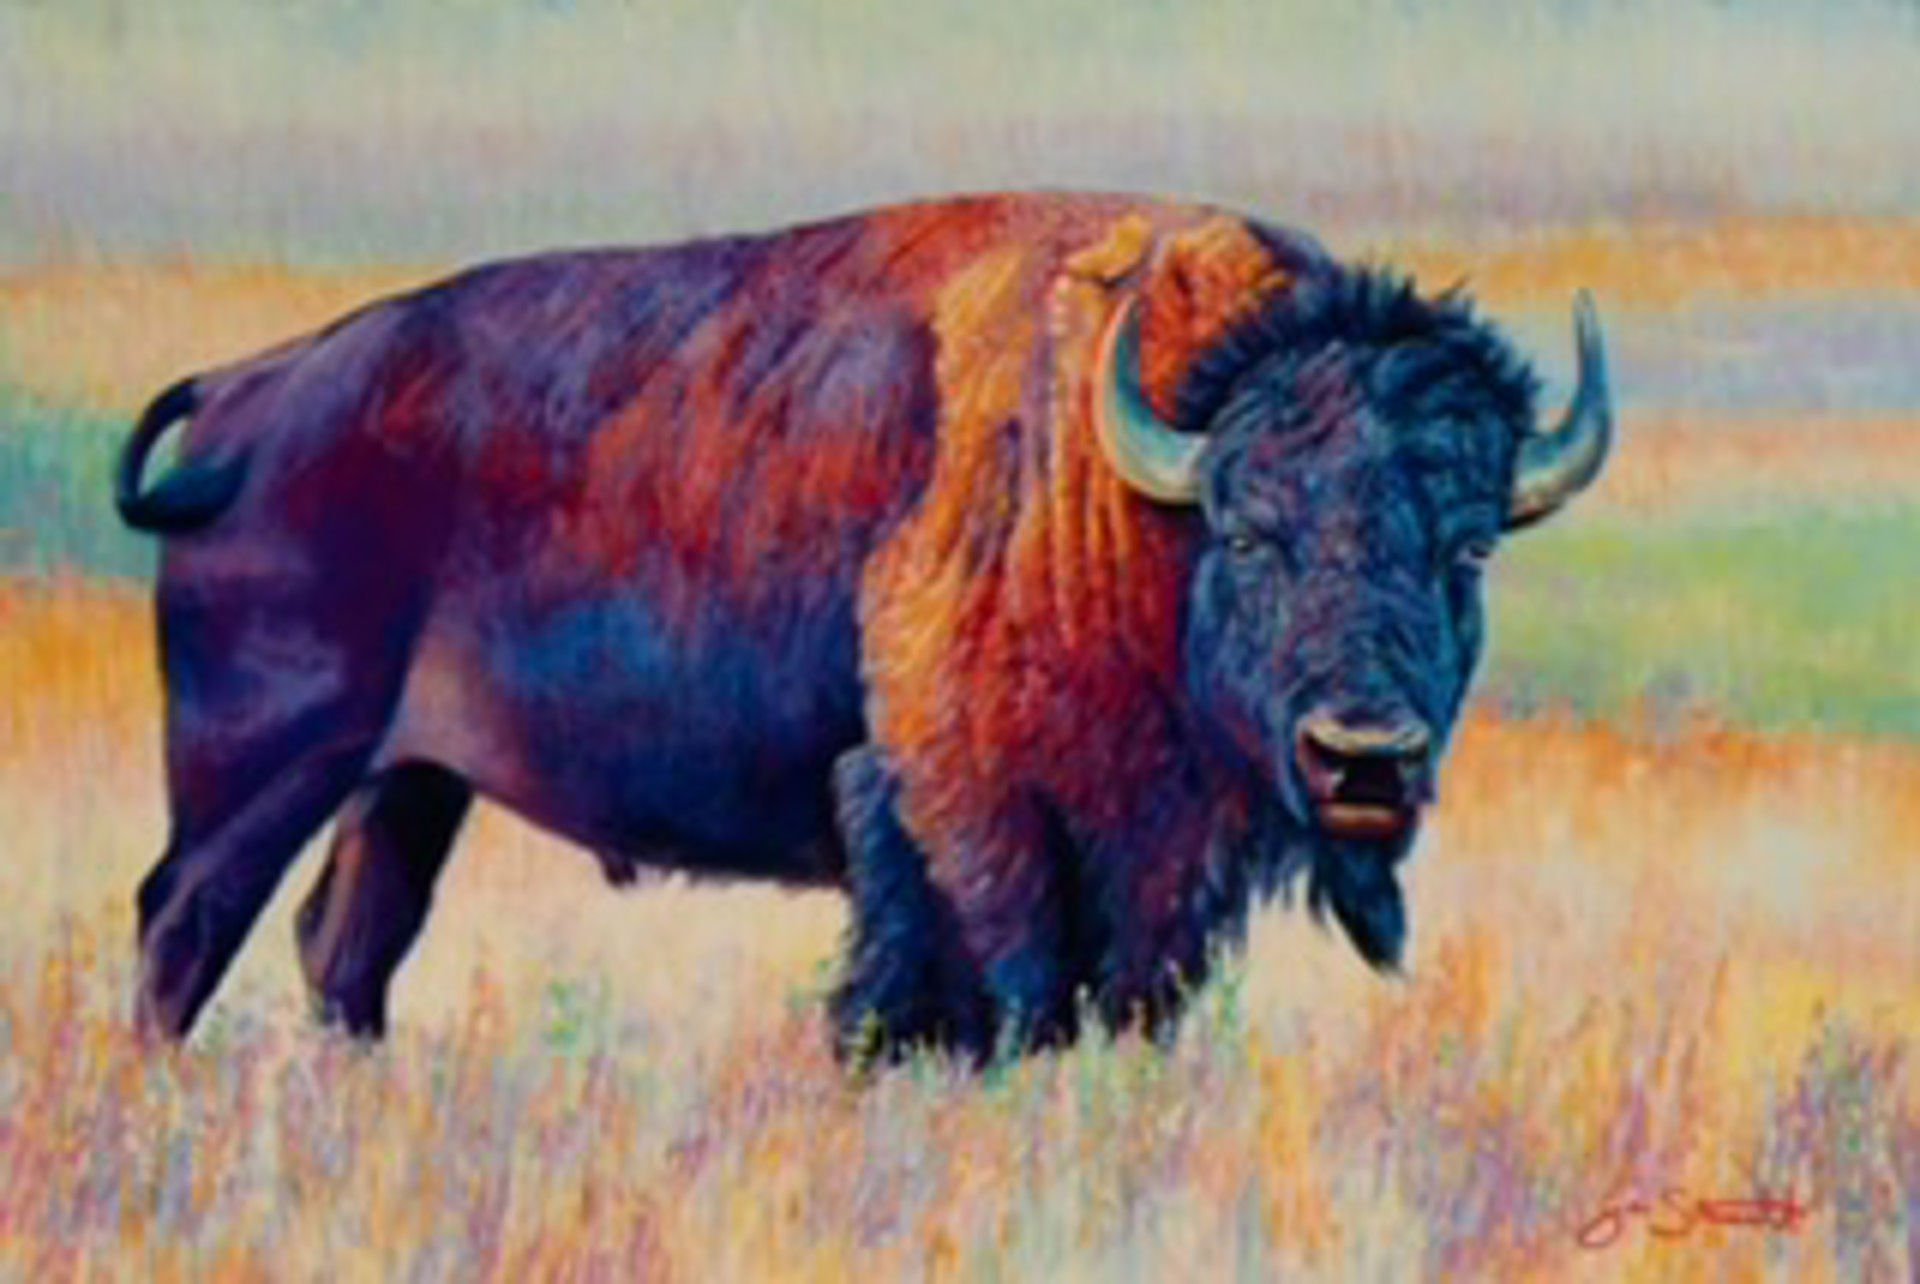 American Bison by Jen Starwalt